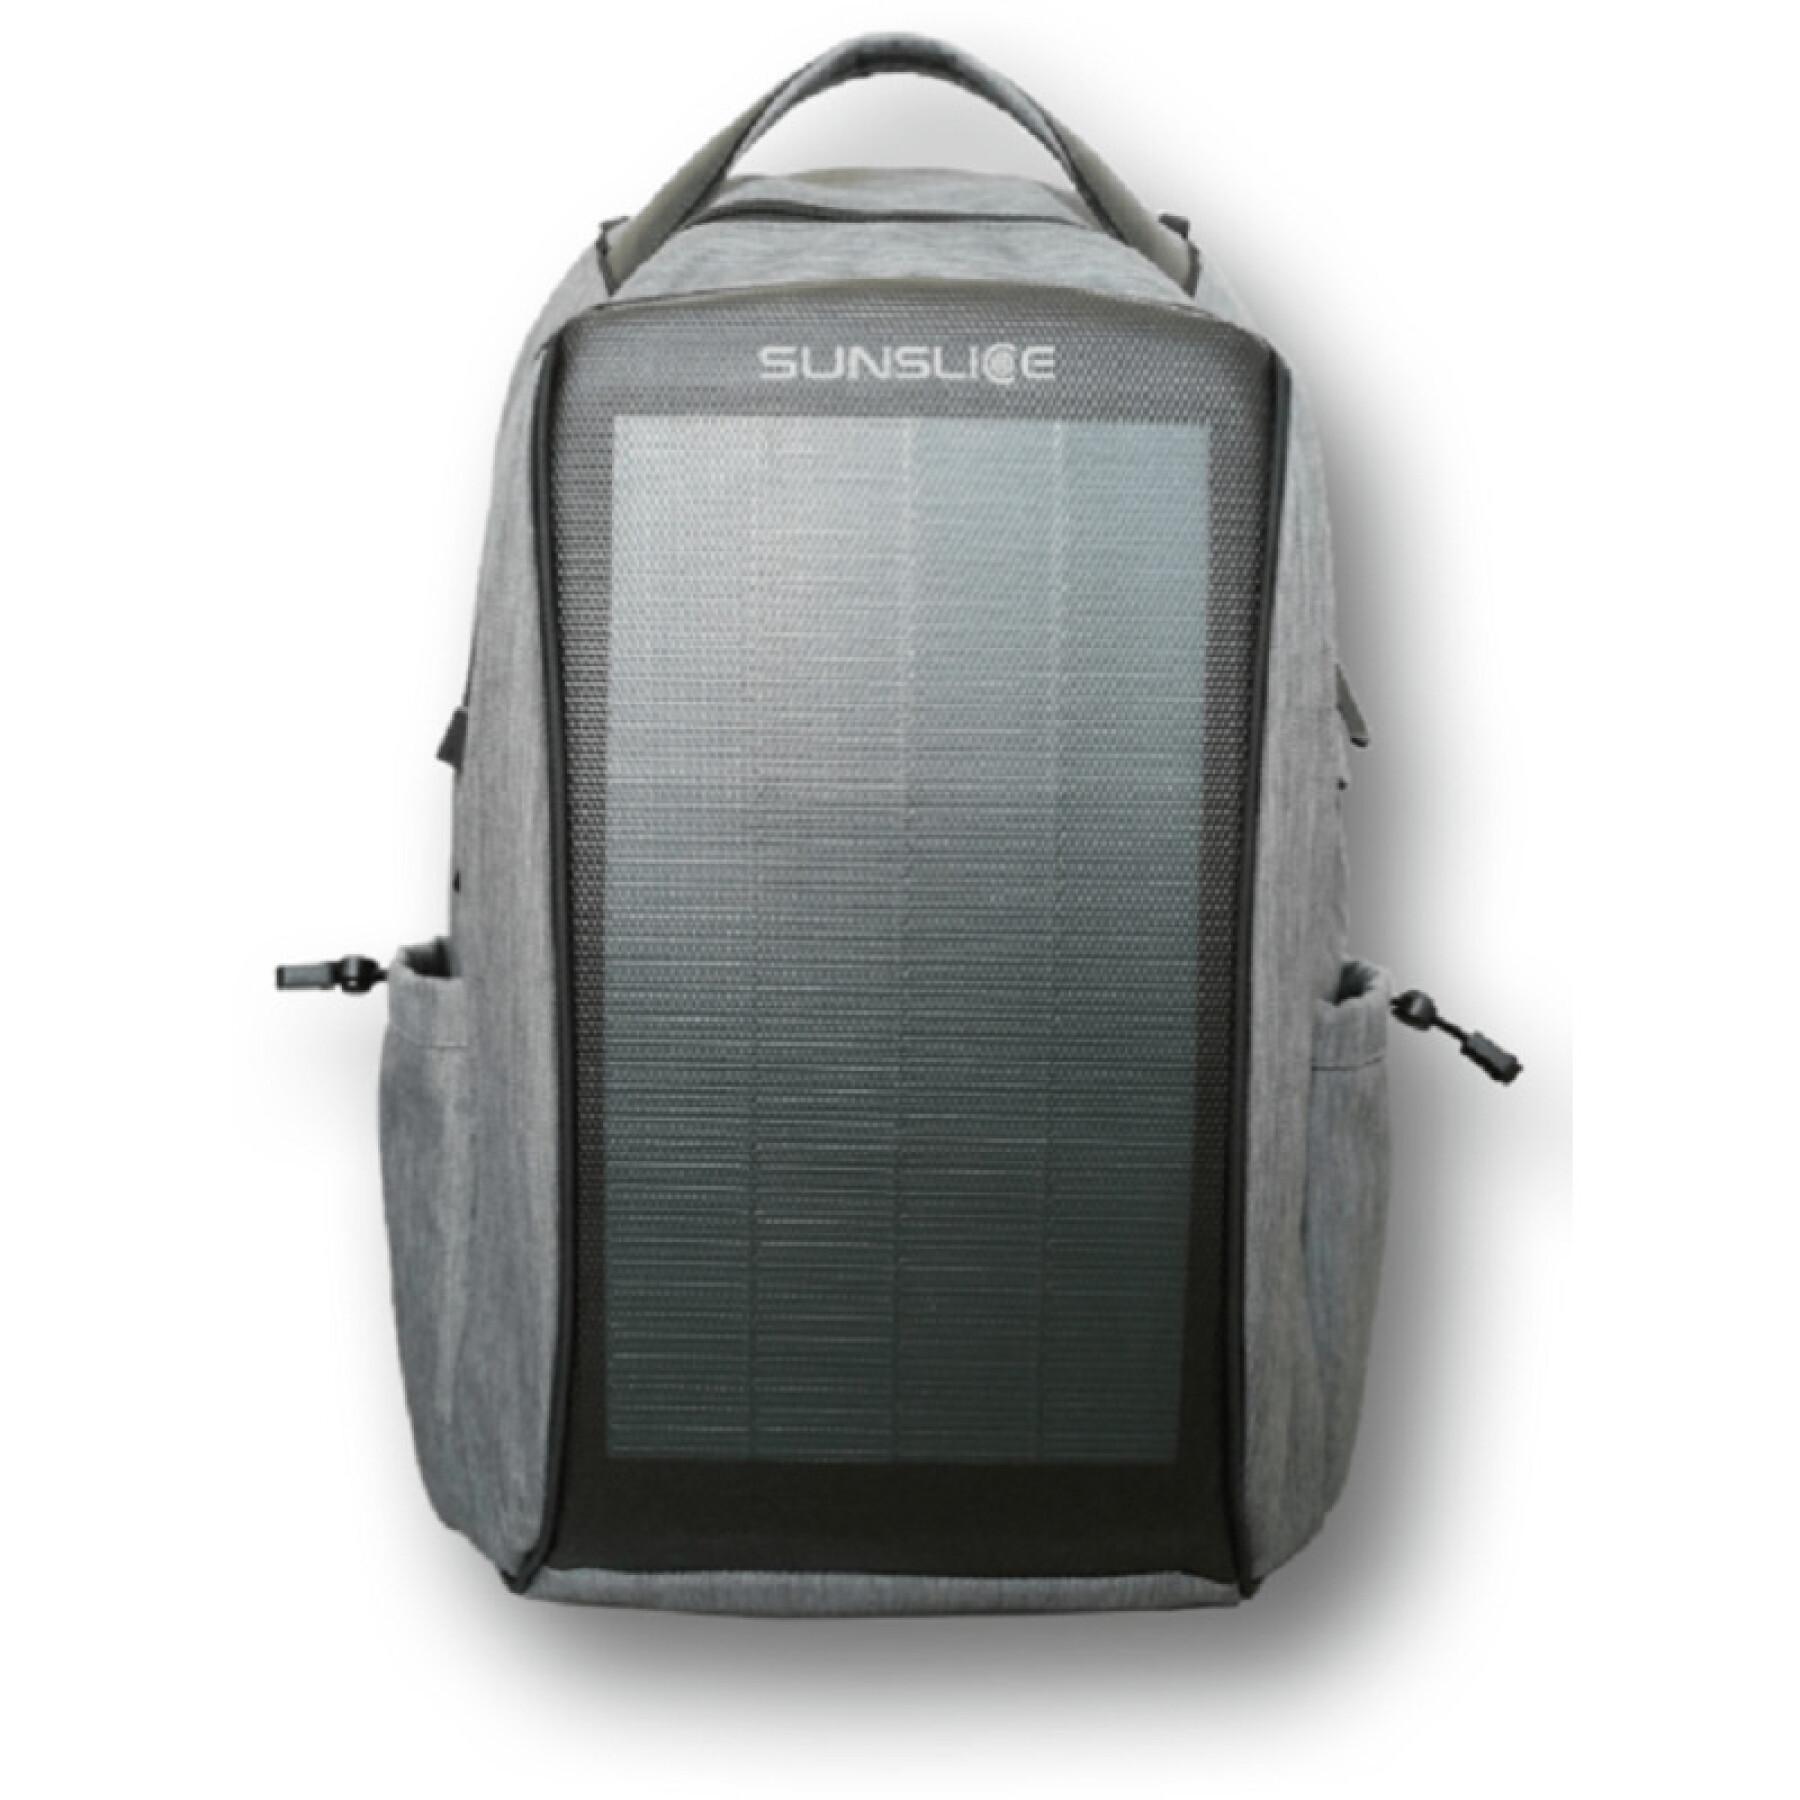 Rucksack mit fest installiertem Solarpanel Sunslice zenith8 watts